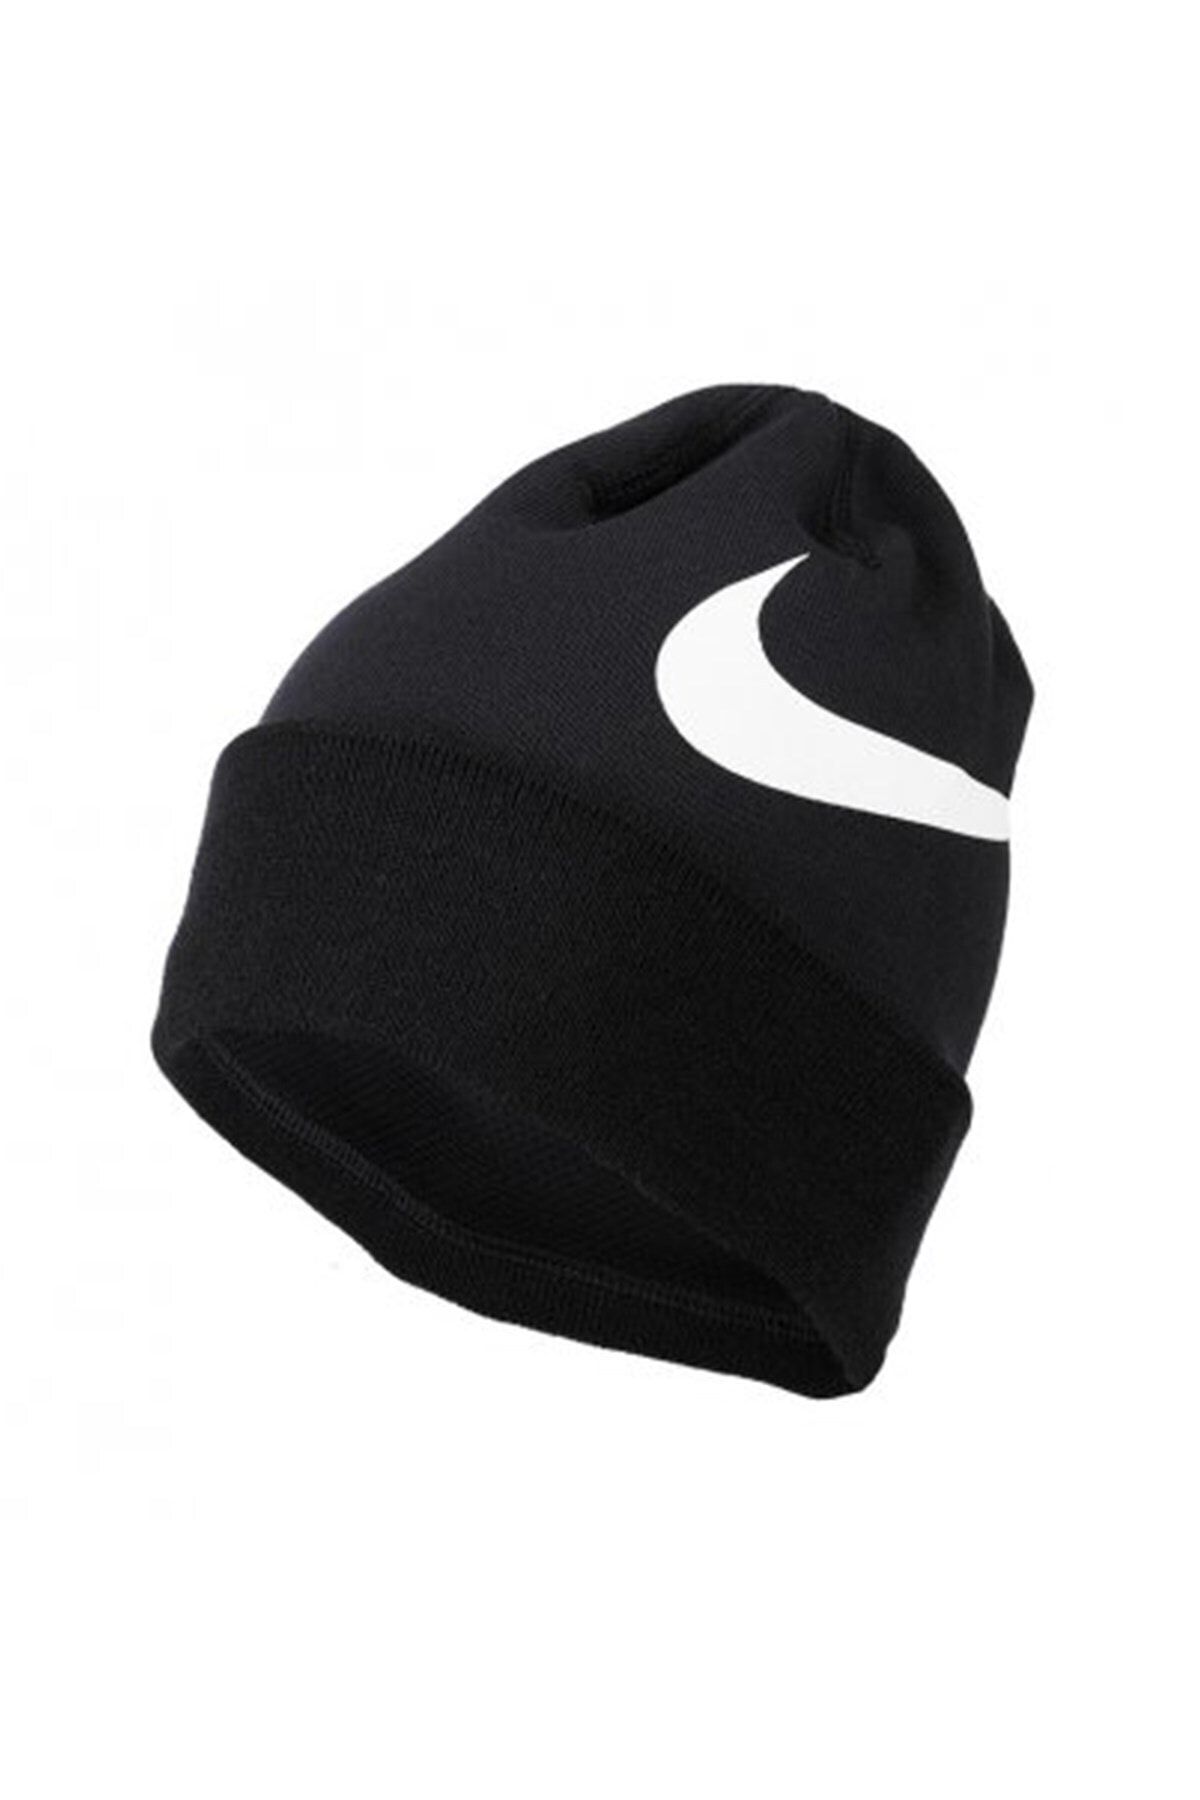 Bonnet Nike Nike Sportswear Black